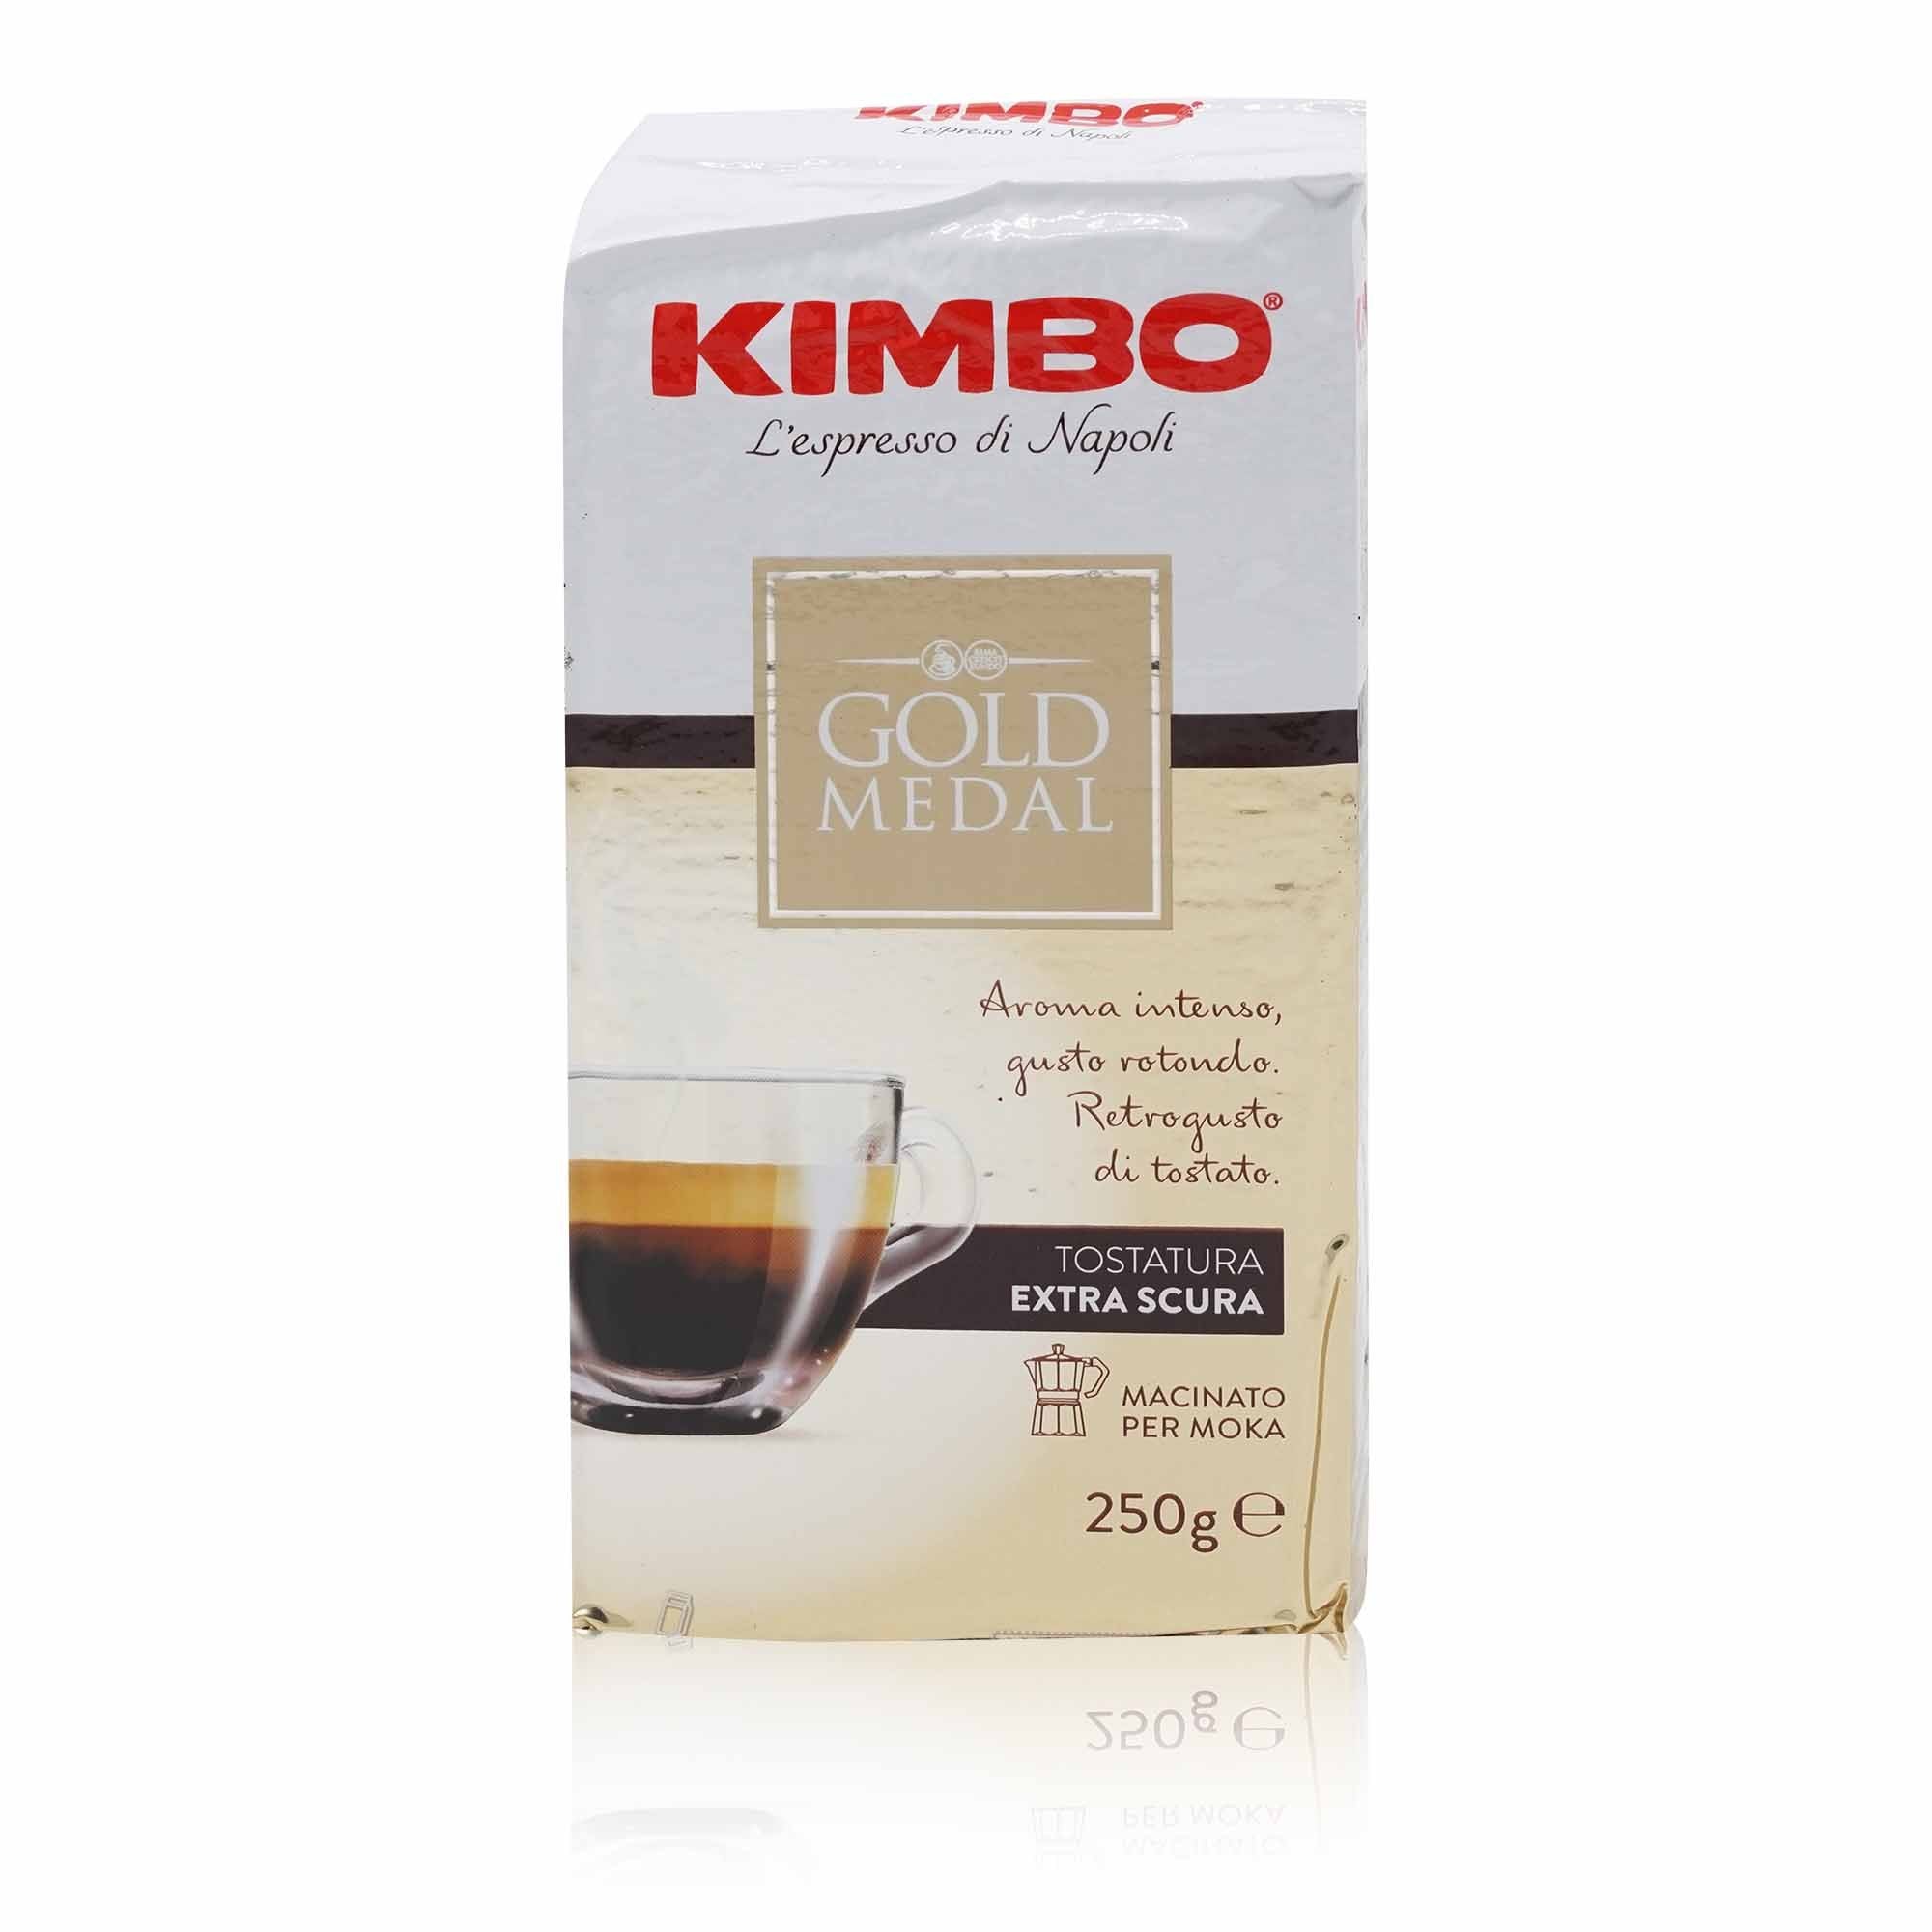 KIMBO Caffè Gold Medal macinato – Espresso Gold Medal gemahlen - 0,250kg - italienisch-einkaufen.de